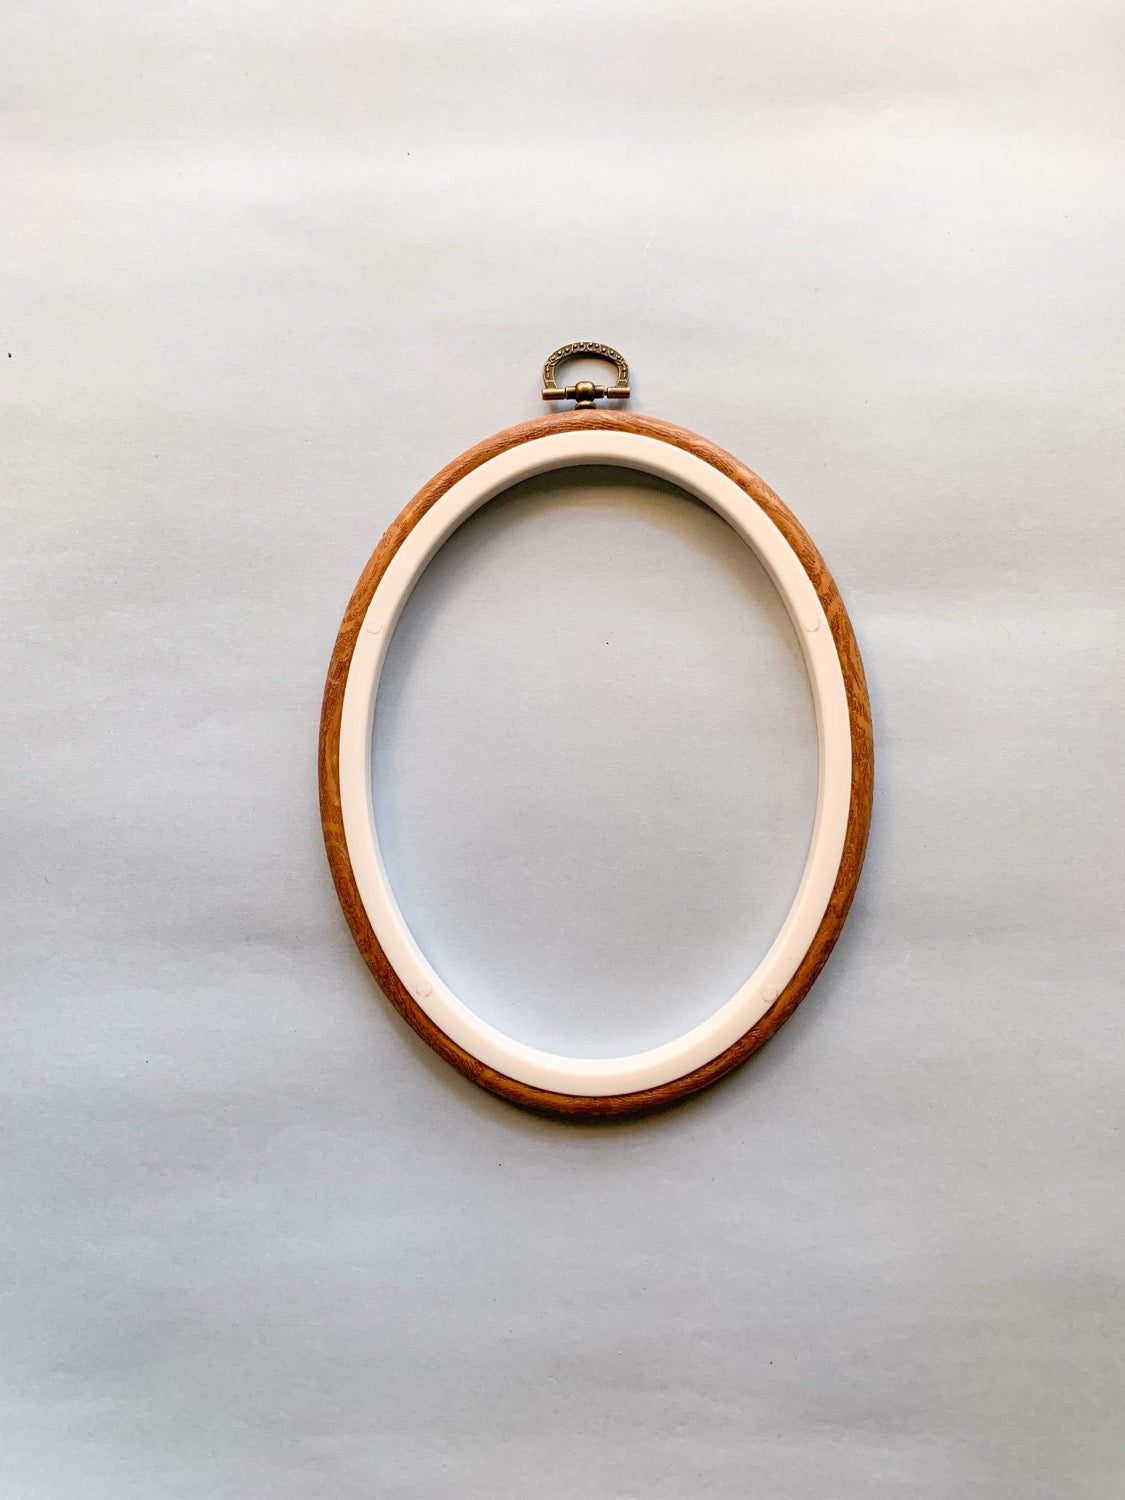 (Bulk Preorder) Oval Flexi Hoop - Small x 10 pcs